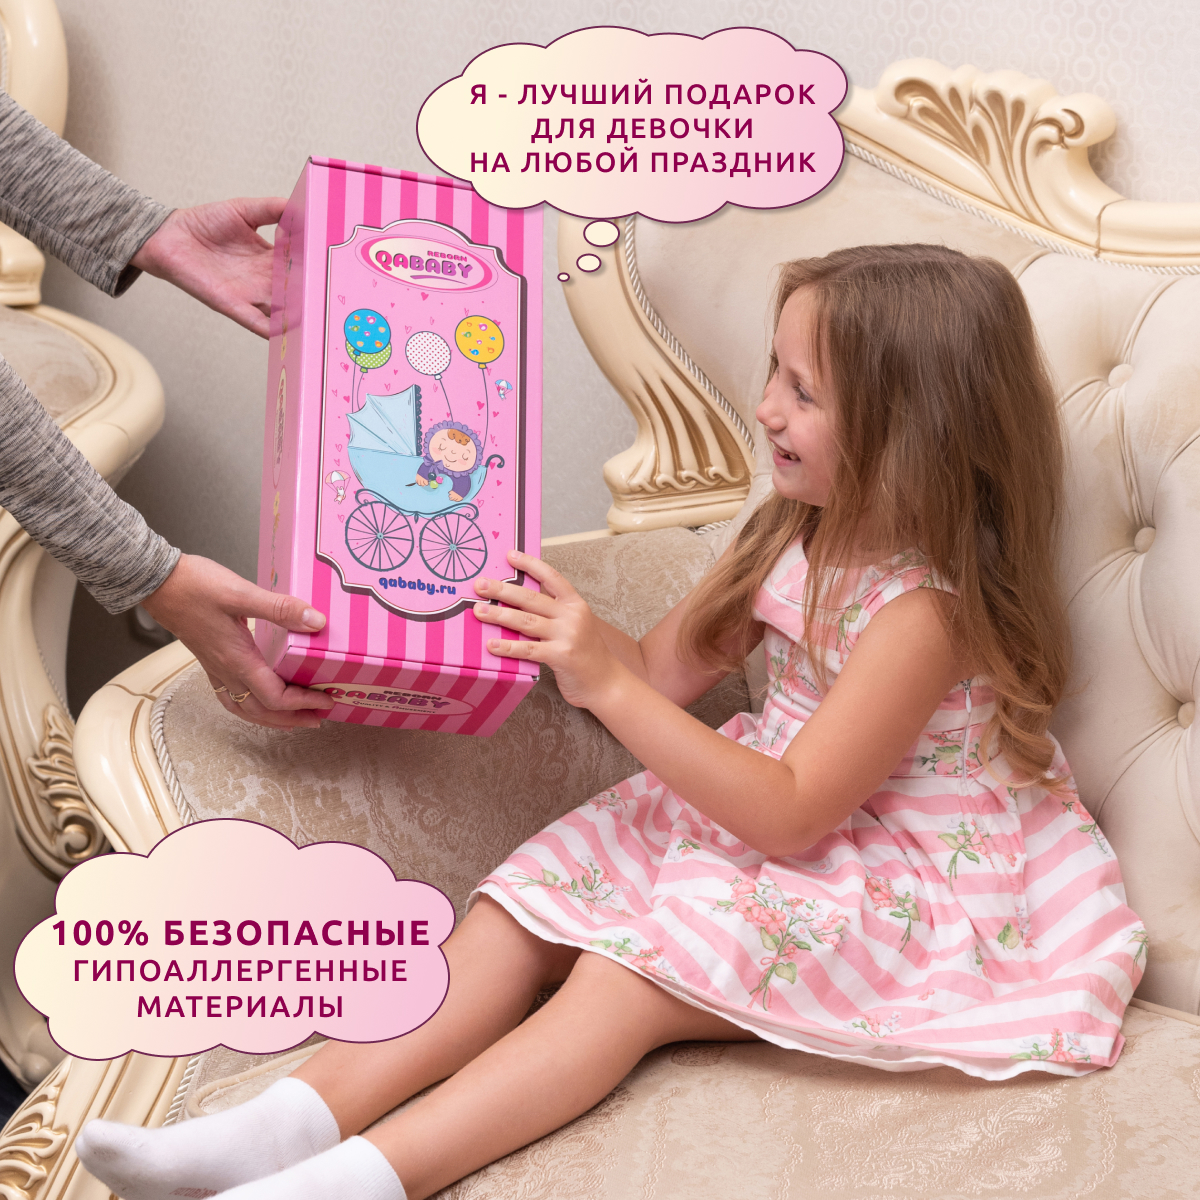 Кукла Реборн QA BABY Кэндис девочка интерактивная Пупс набор игрушки для ванной для девочки 38 см 3811 - фото 11